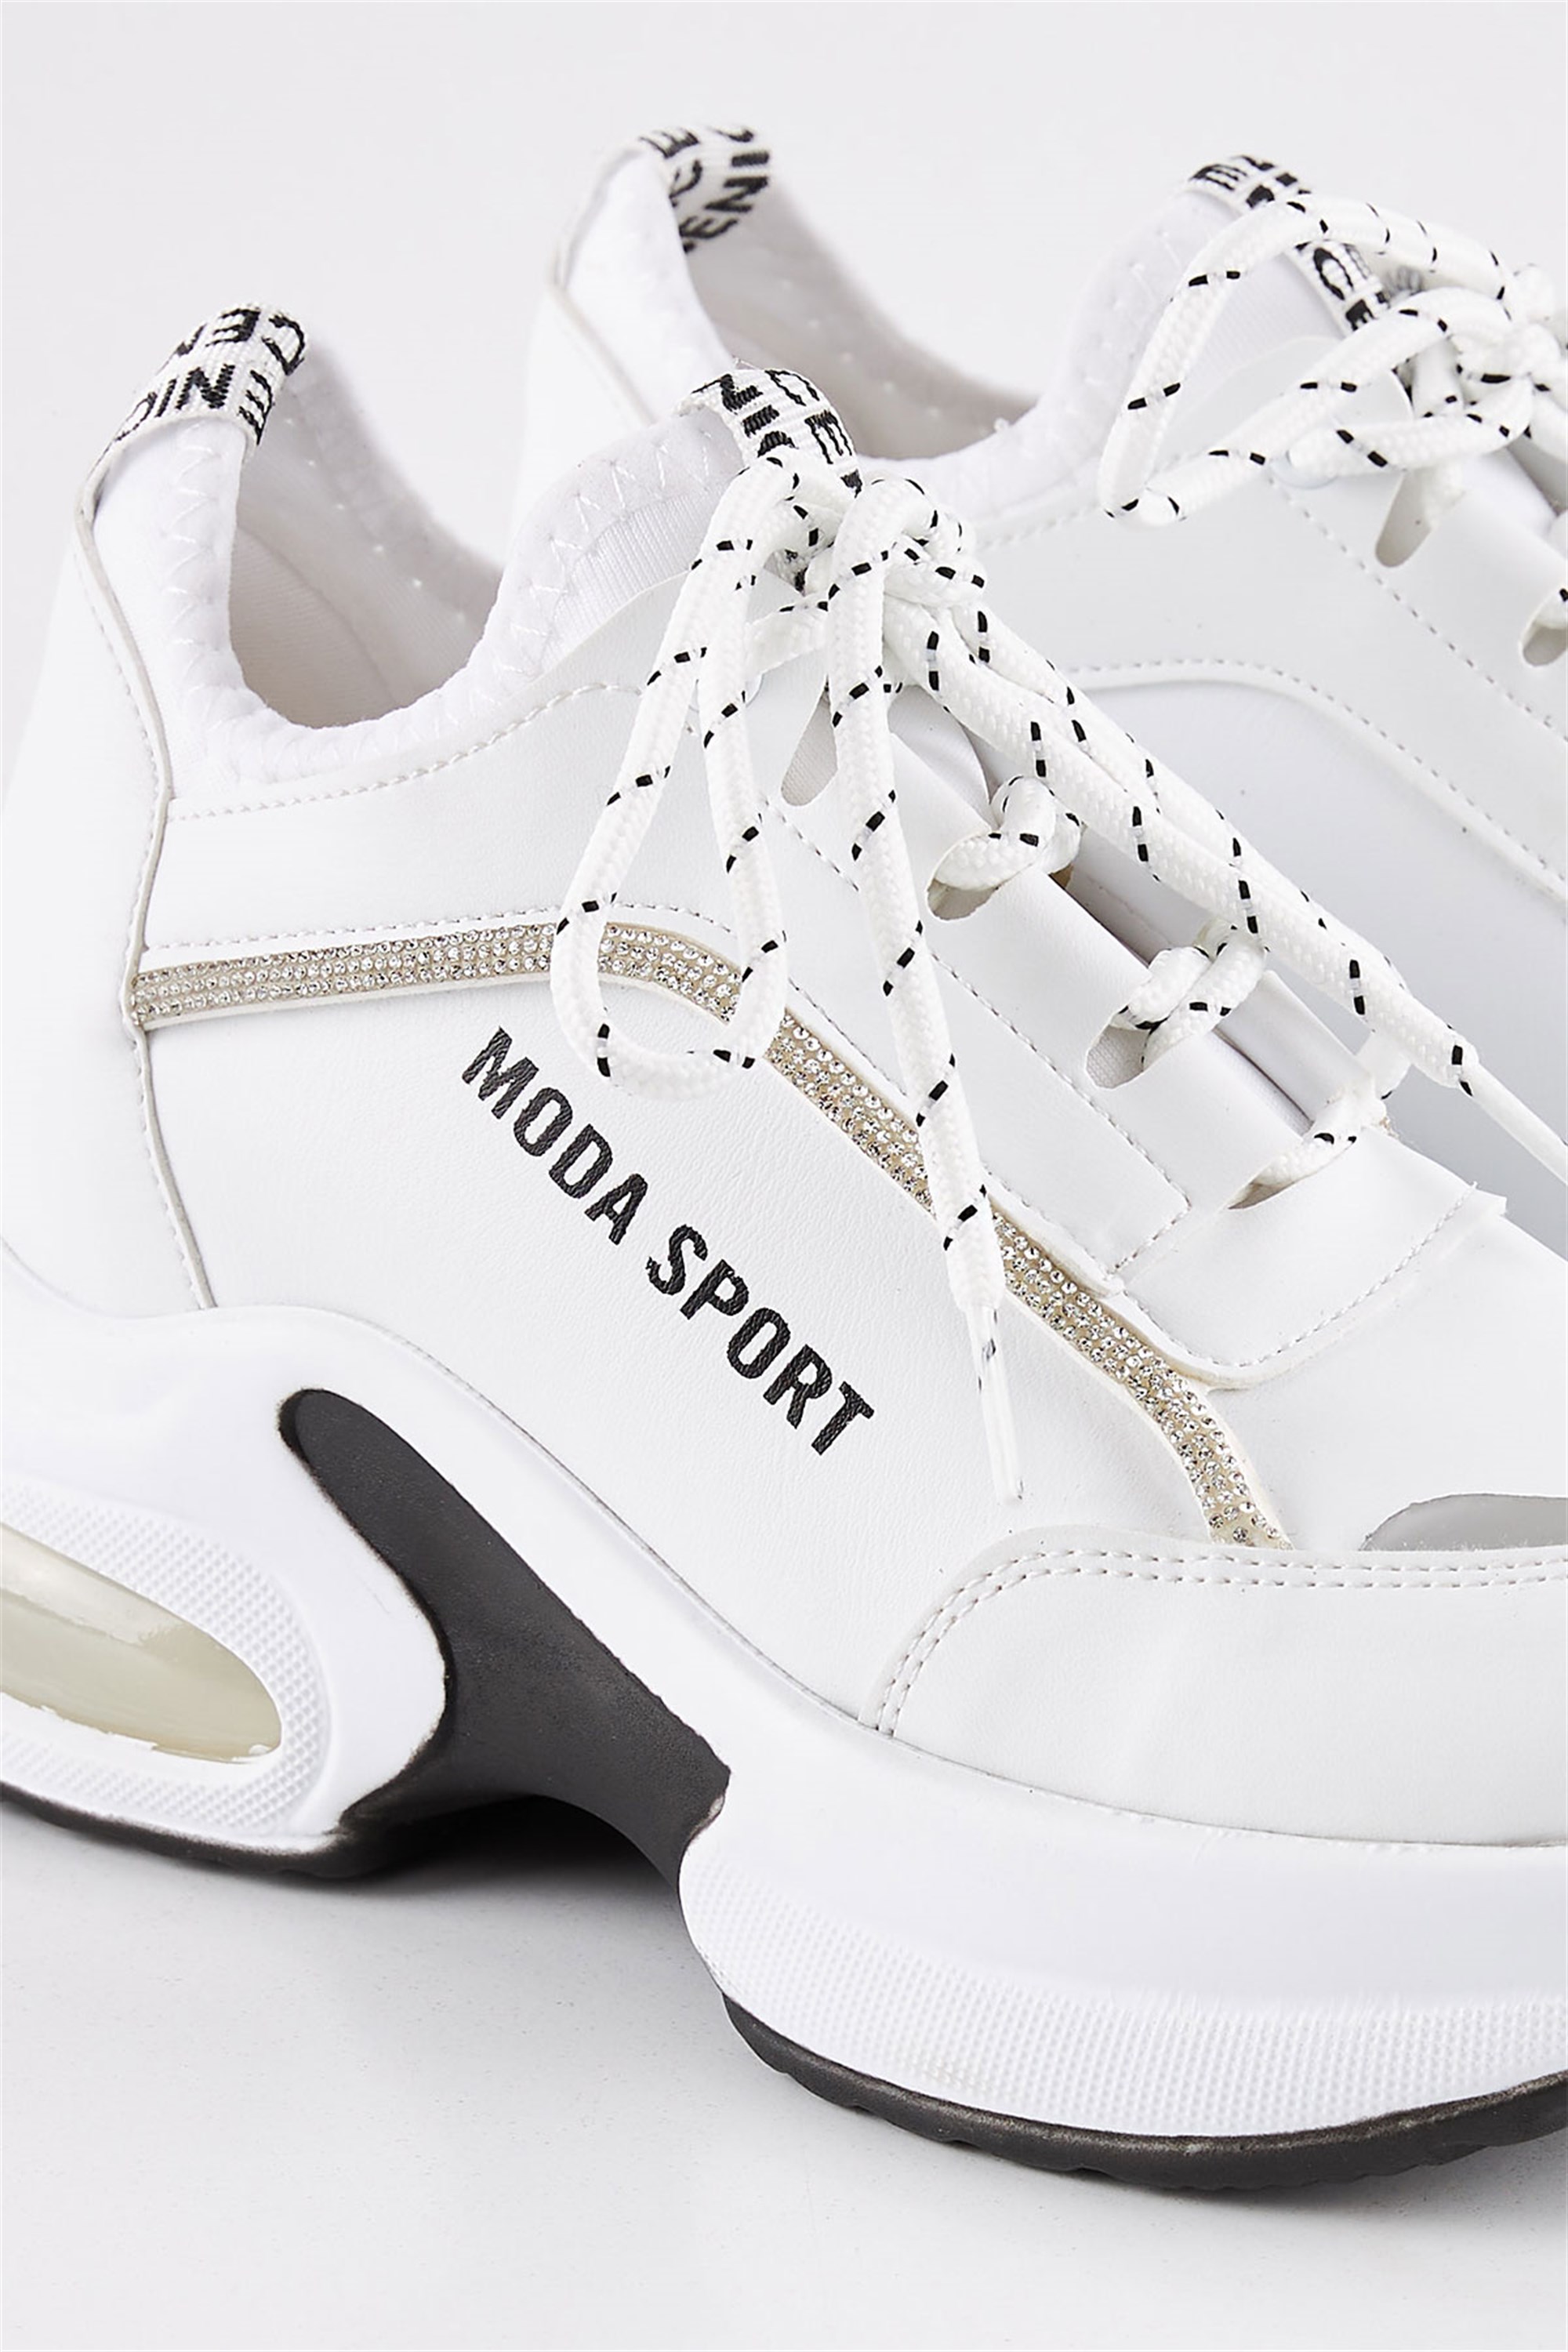 Nesvop Beyaz Gizli Dolgu Topuklu Kalın Taban Kadın Spor Ayakkabı